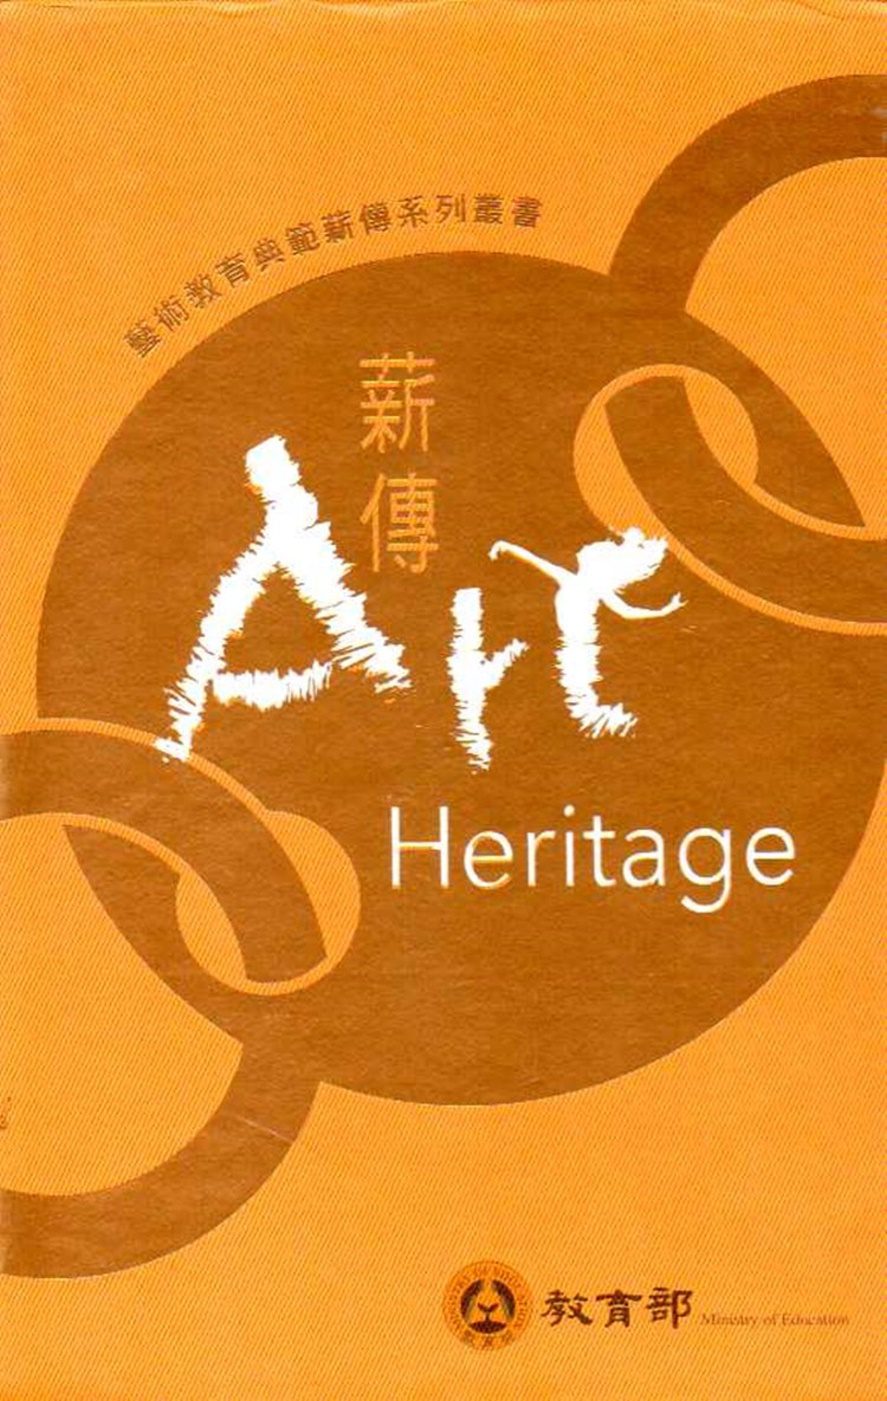 藝術教育典範薪傳系列叢書(9本一套)